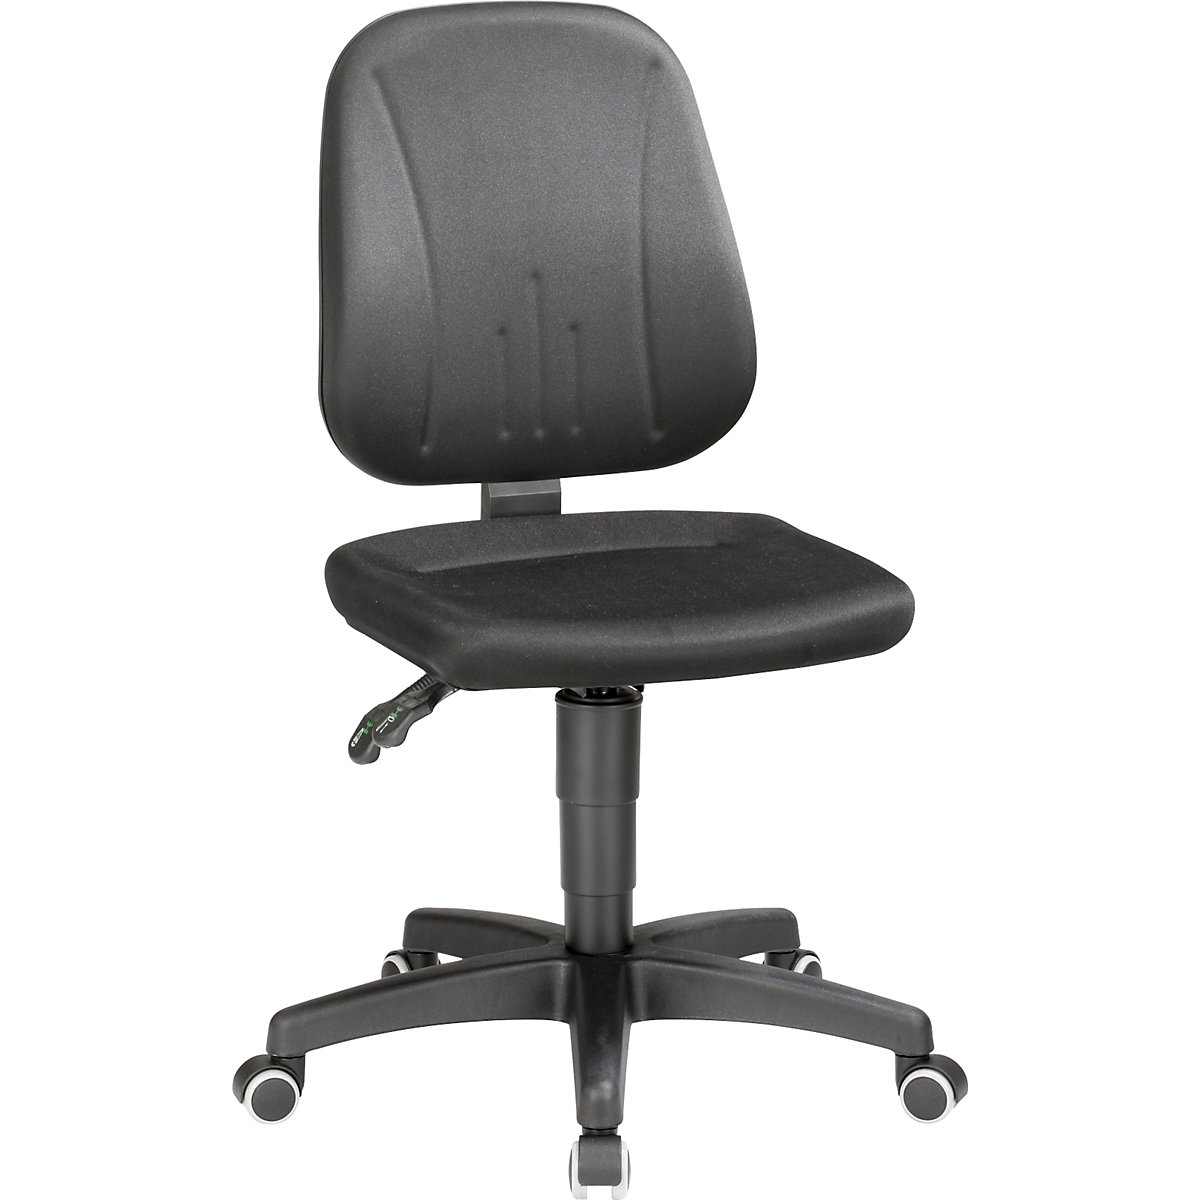 Okretni radni stolac – bimos, s namještanjem visine pomoću plinske opruge, presvlaka od tkanine, u crnoj boji, s kotačima-4